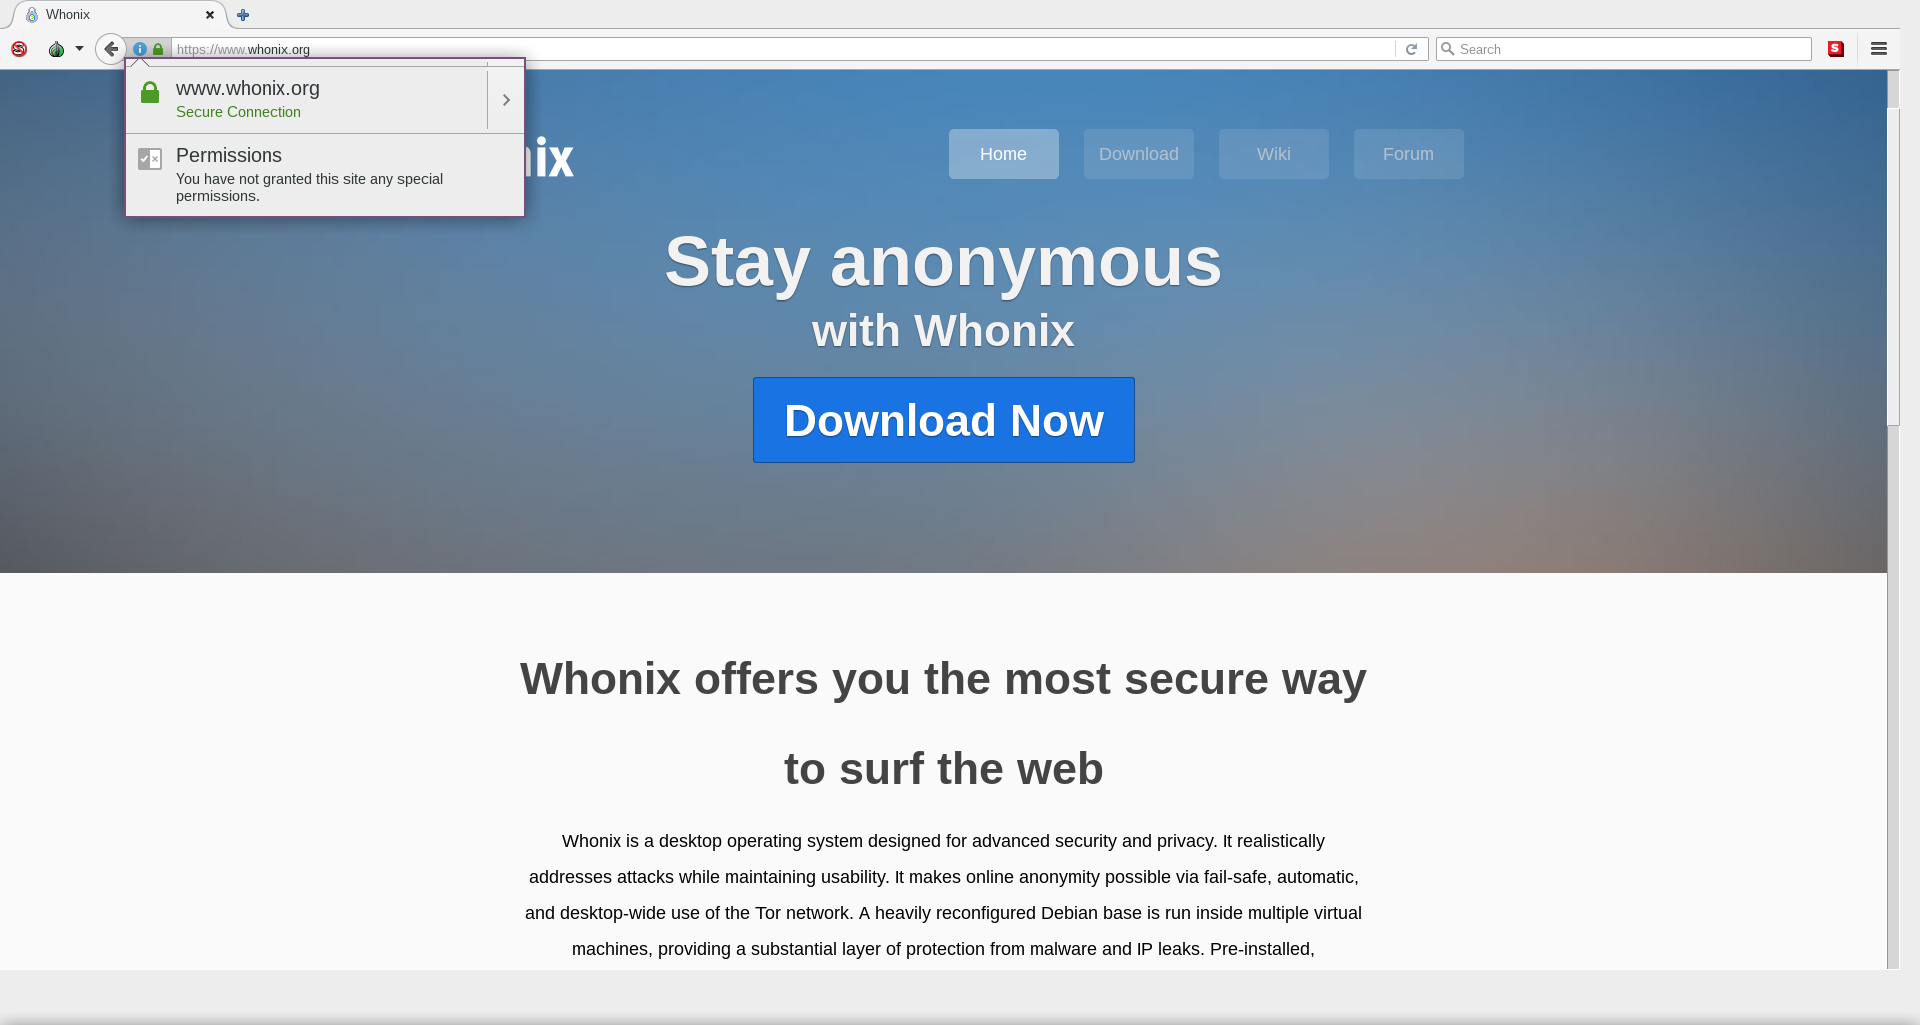 whonix-匿名操作系统|隐私保护|身份隐藏|流量隐藏